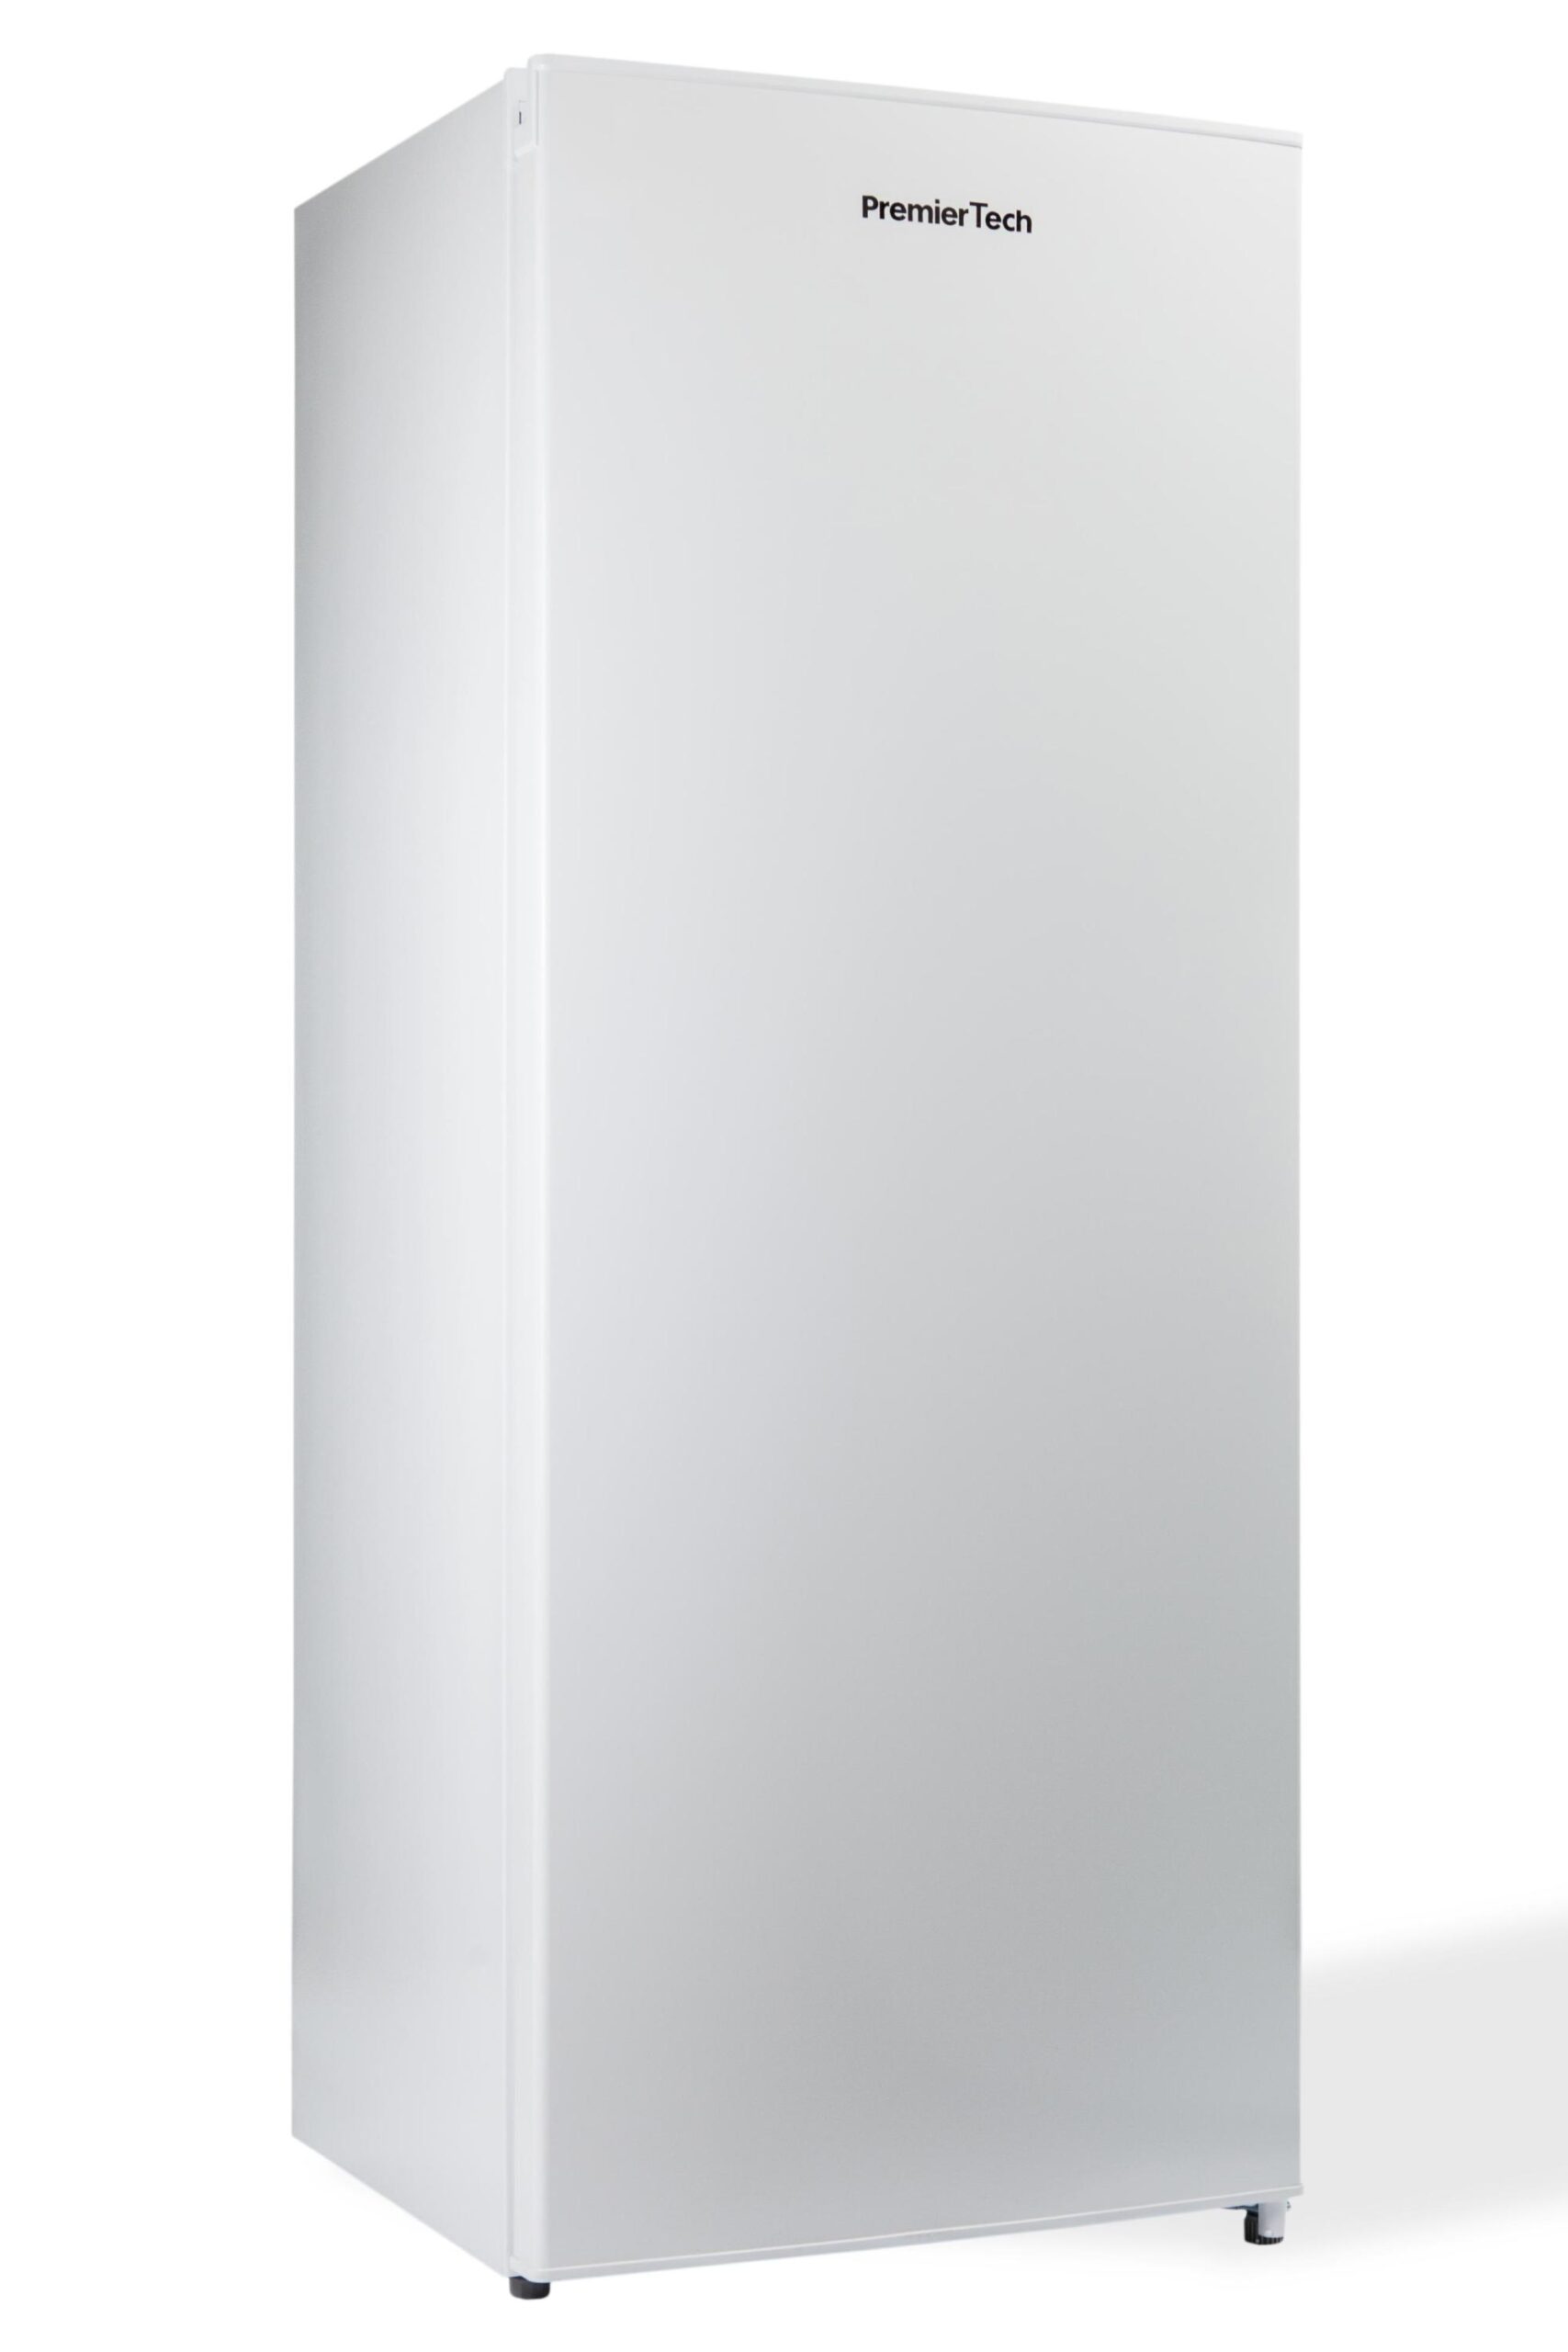 PremierTech® PremierTech PT-FR153 Congelatore Verticale Freezer 160 litri -24°gradi Classe E 4**** Stelle 3 Cassetti e 2 Sportelli, Bianco